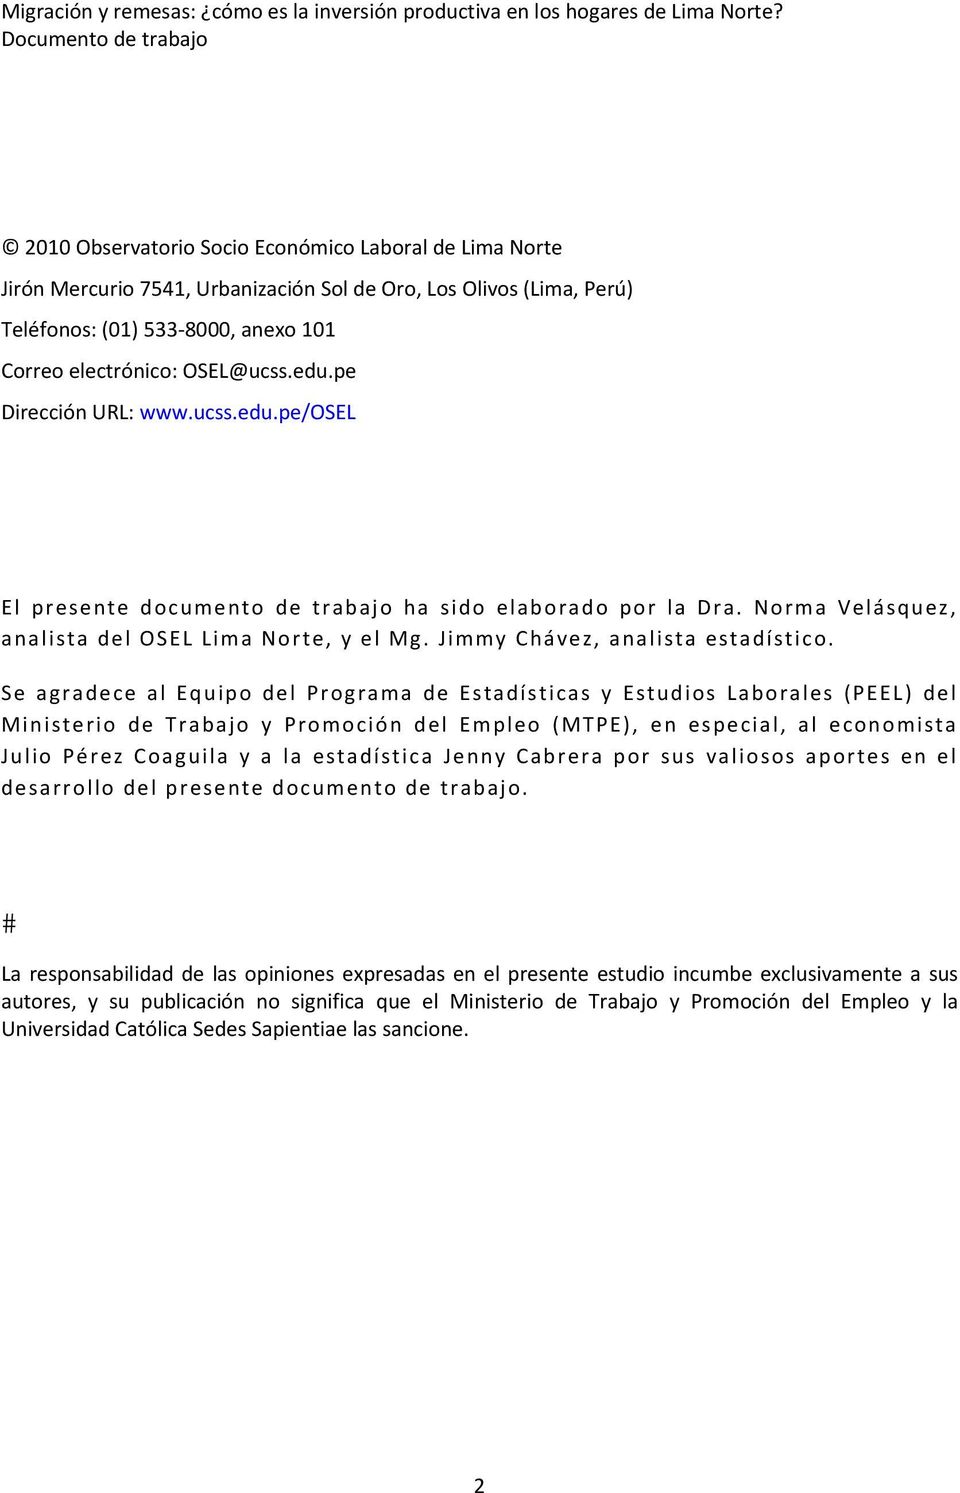 electrónico: OSEL@ucss.edu.pe Dirección URL: www.ucss.edu.pe/osel El presente documento de trabajo ha sido elaborado por la Dra. Norma Velásquez, analista del OSEL Lima Norte, y el Mg.